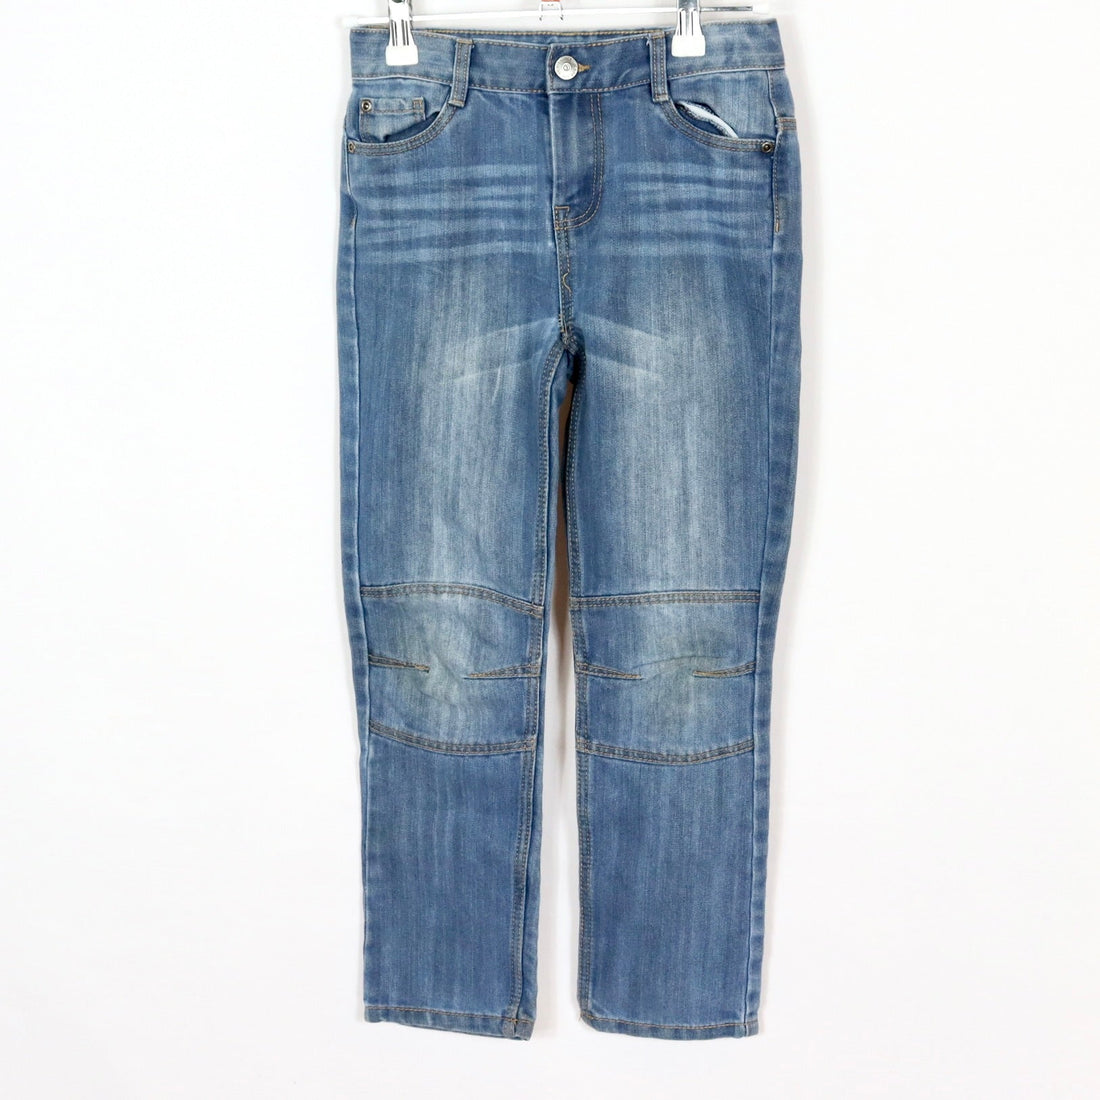 Jeans - Vertbaudet - Slim - 134 - blau - Boy - sehr guter Zustand